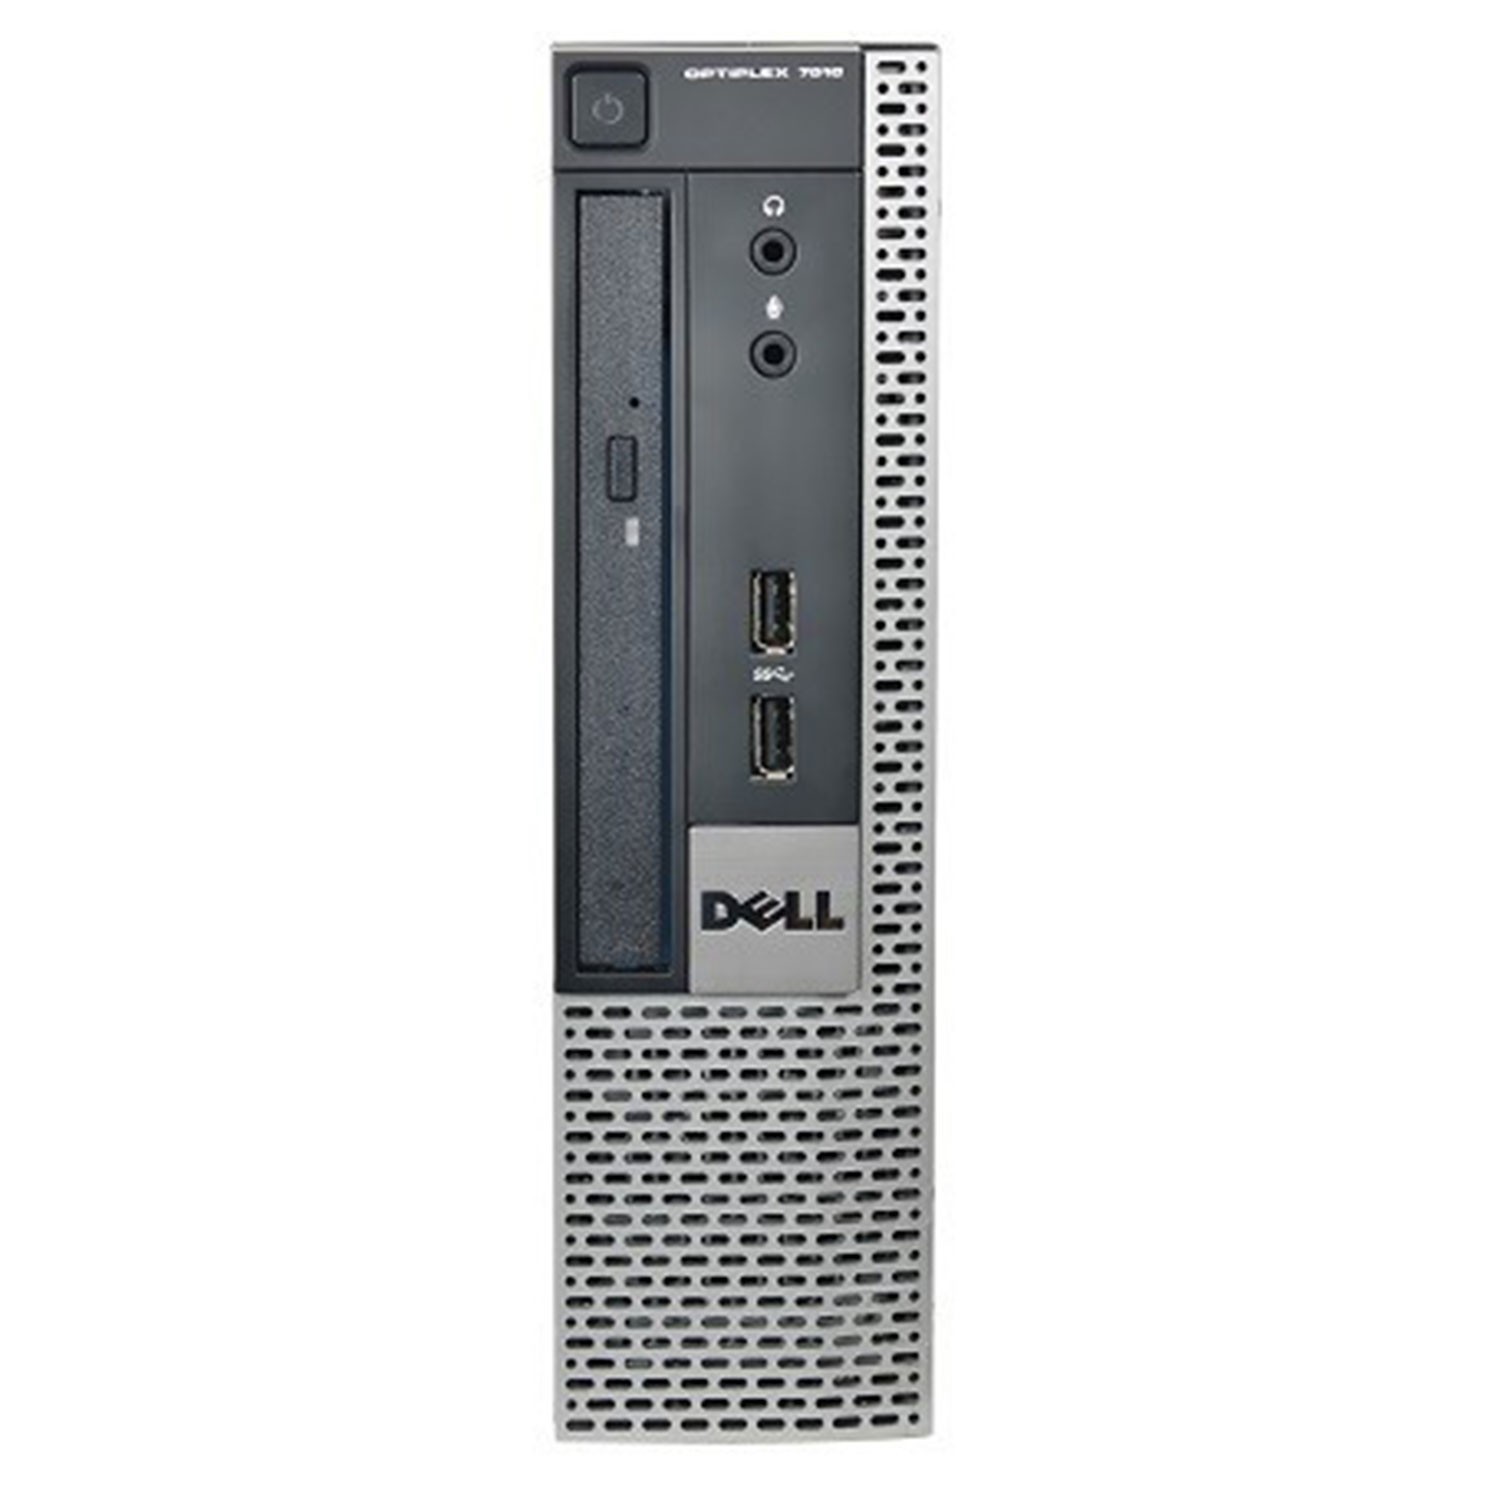 Refurbished Dell 7010/i7-3770/4GB RAM/250GB HDD/DVD-RW/Windows 10/B 